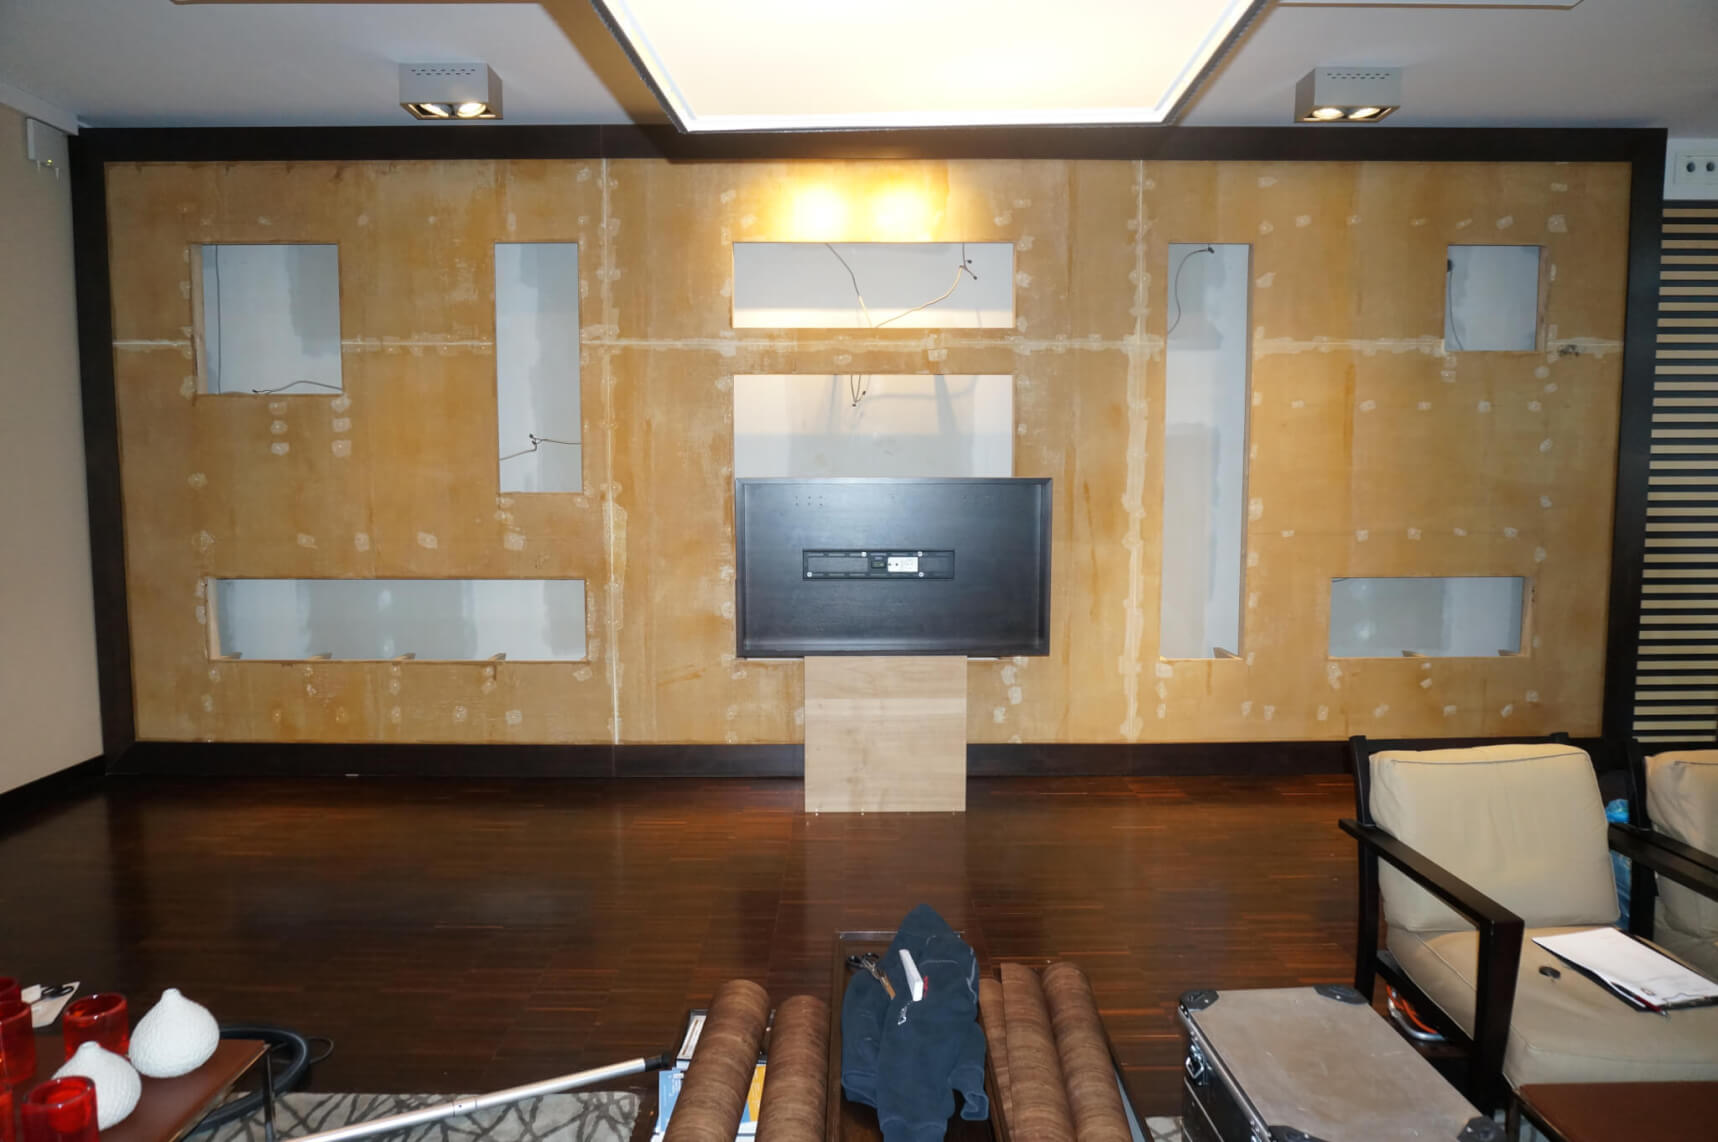 Hotel Wand in der Lobby mit Folie bekleben Bilder Kosten vorher